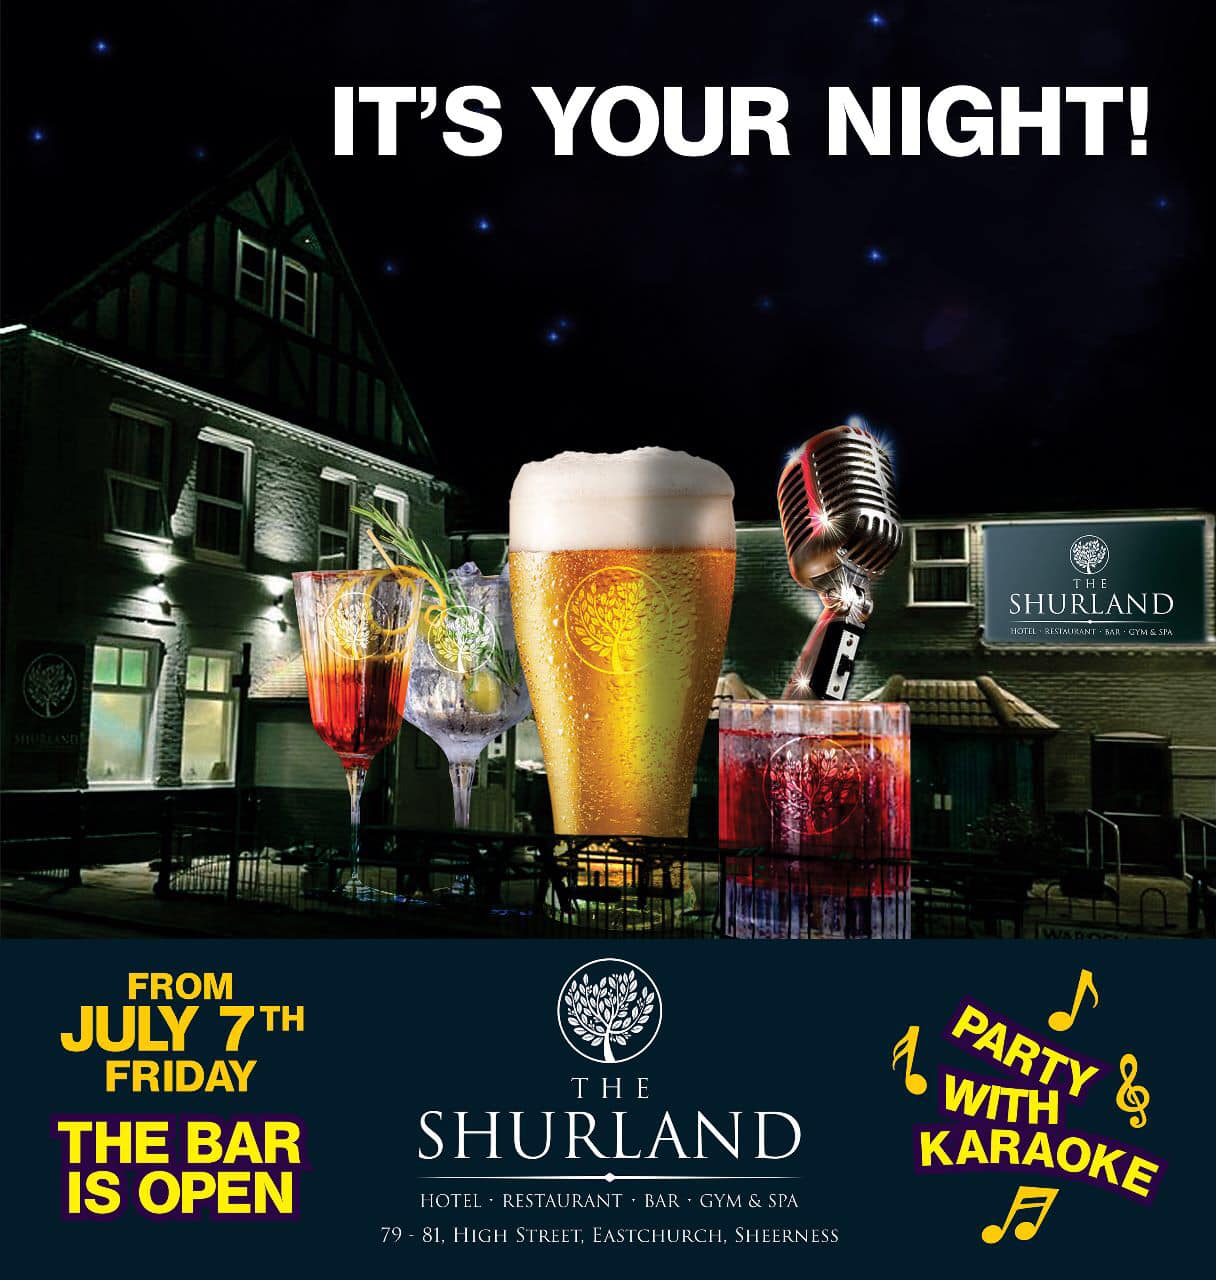 The Shurland Pub